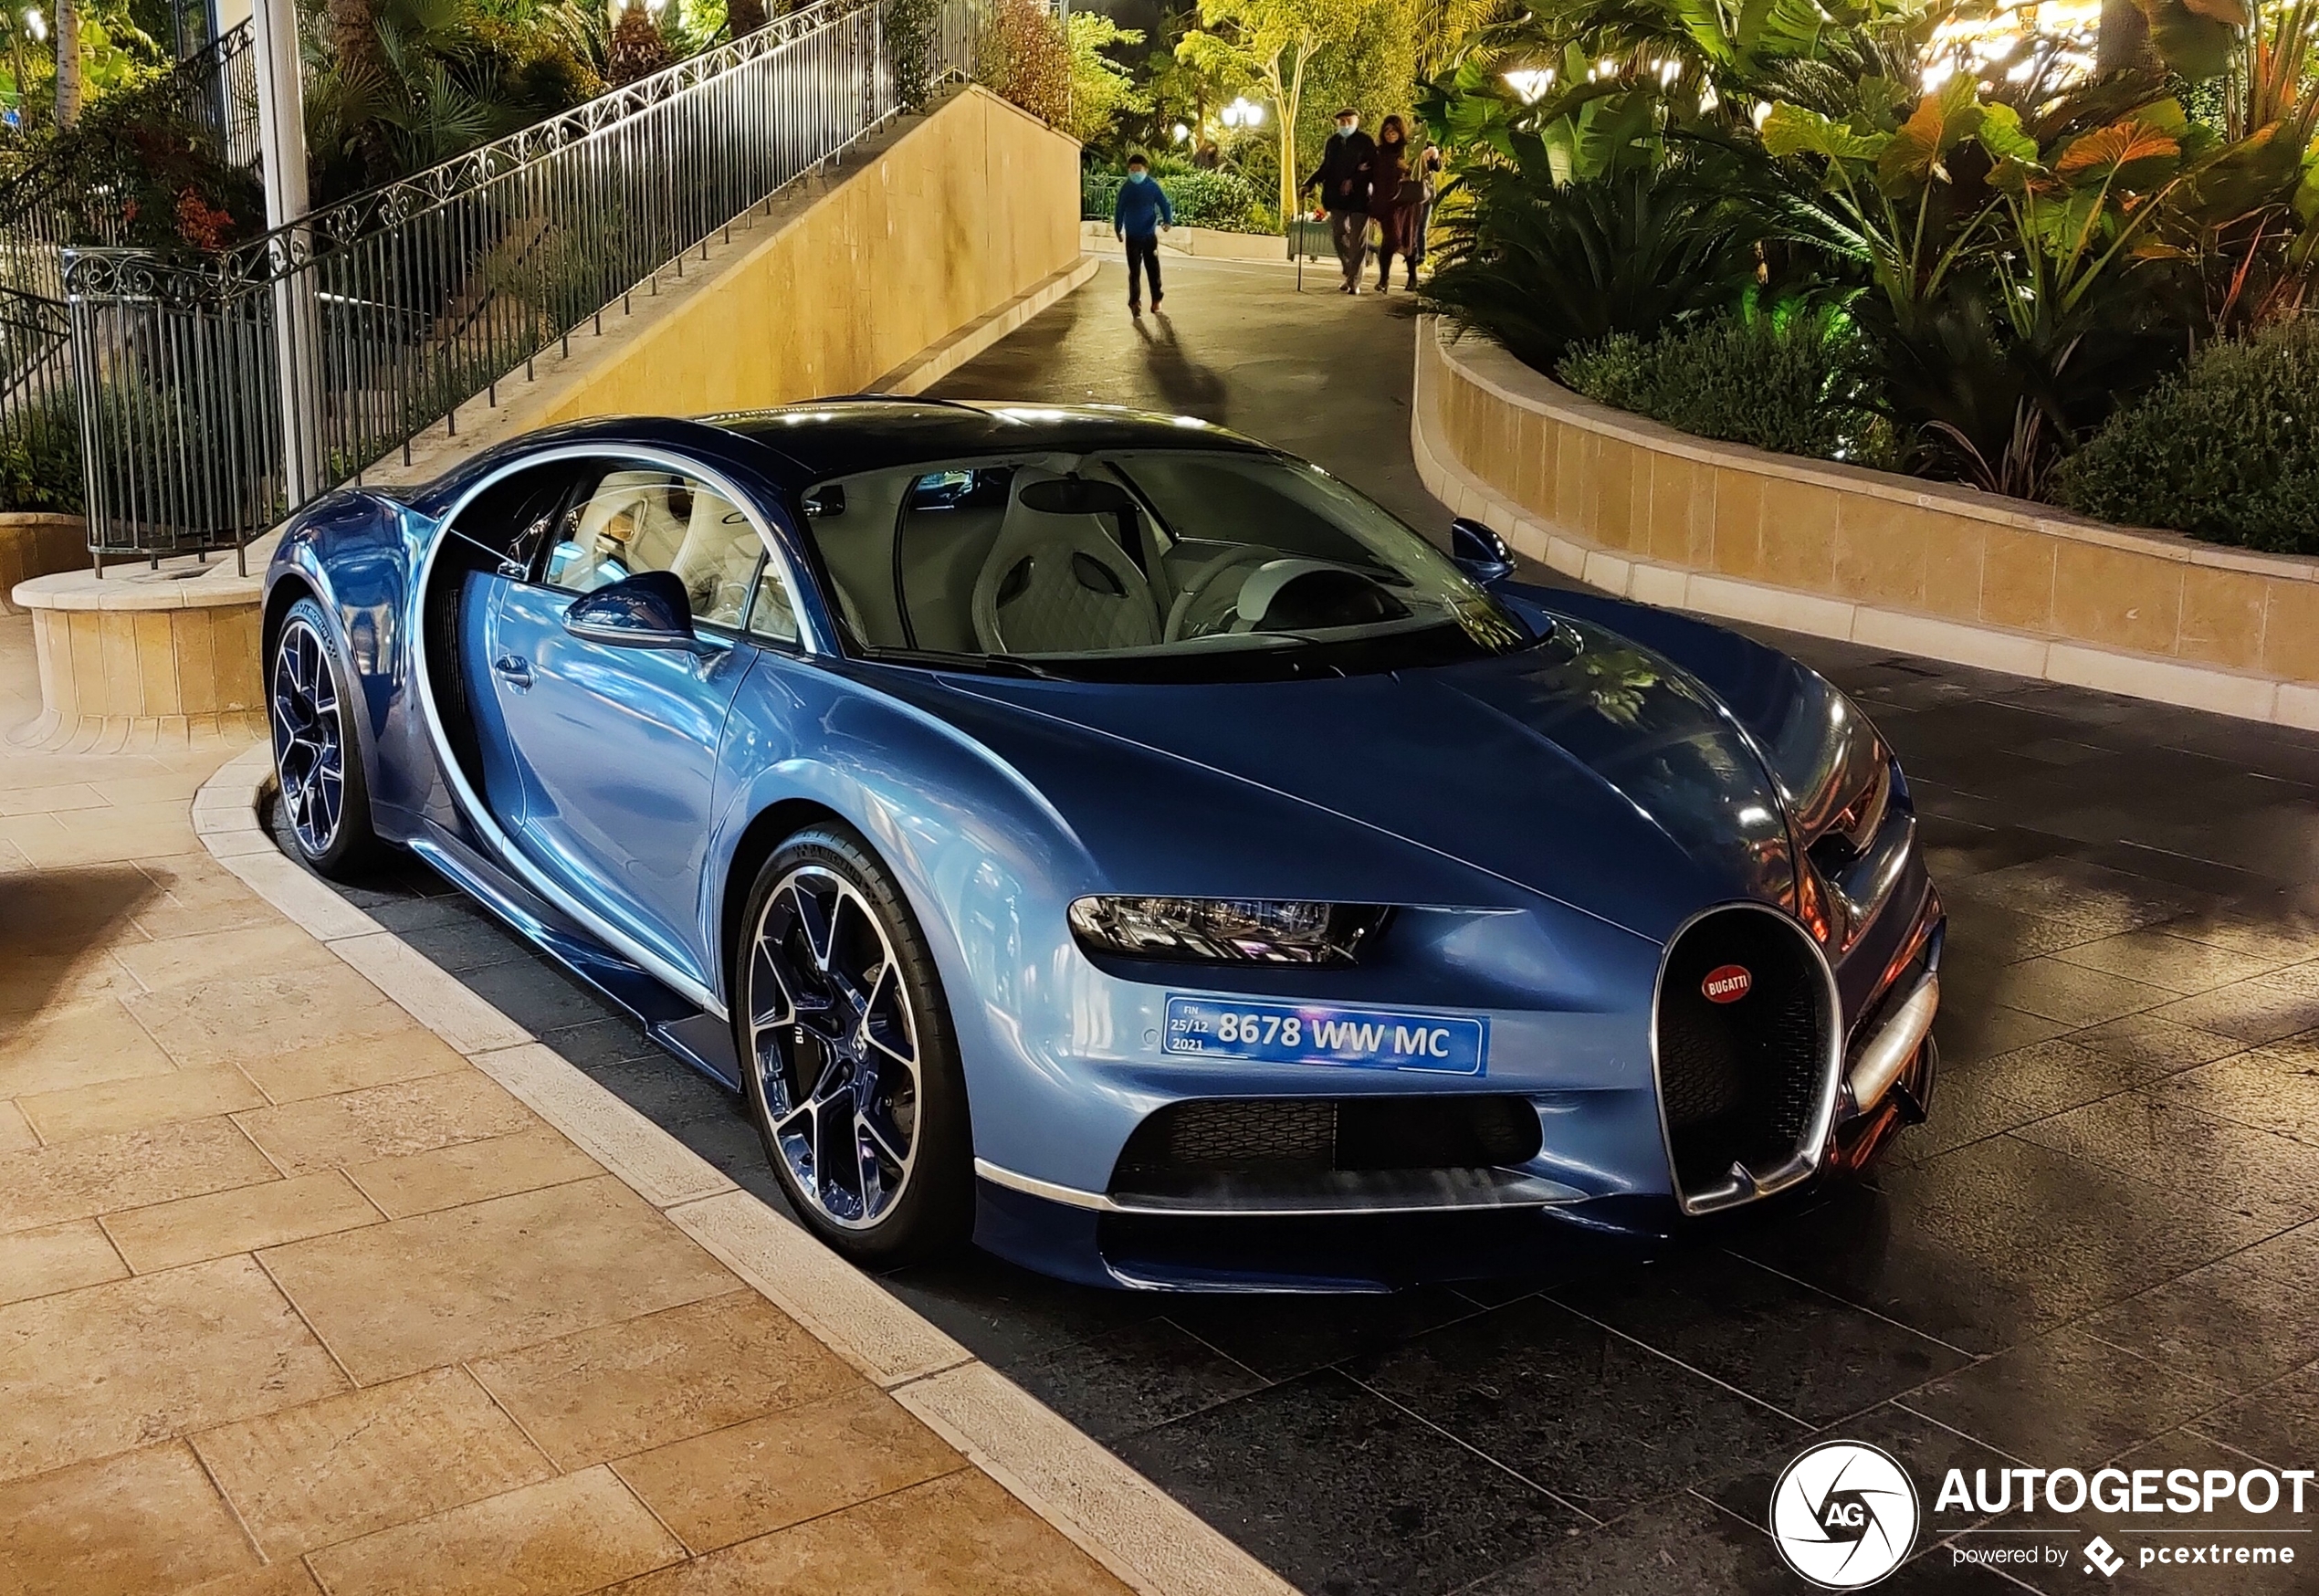 Was deze Bugatti kerstcadeautje van paar miljoen euro?